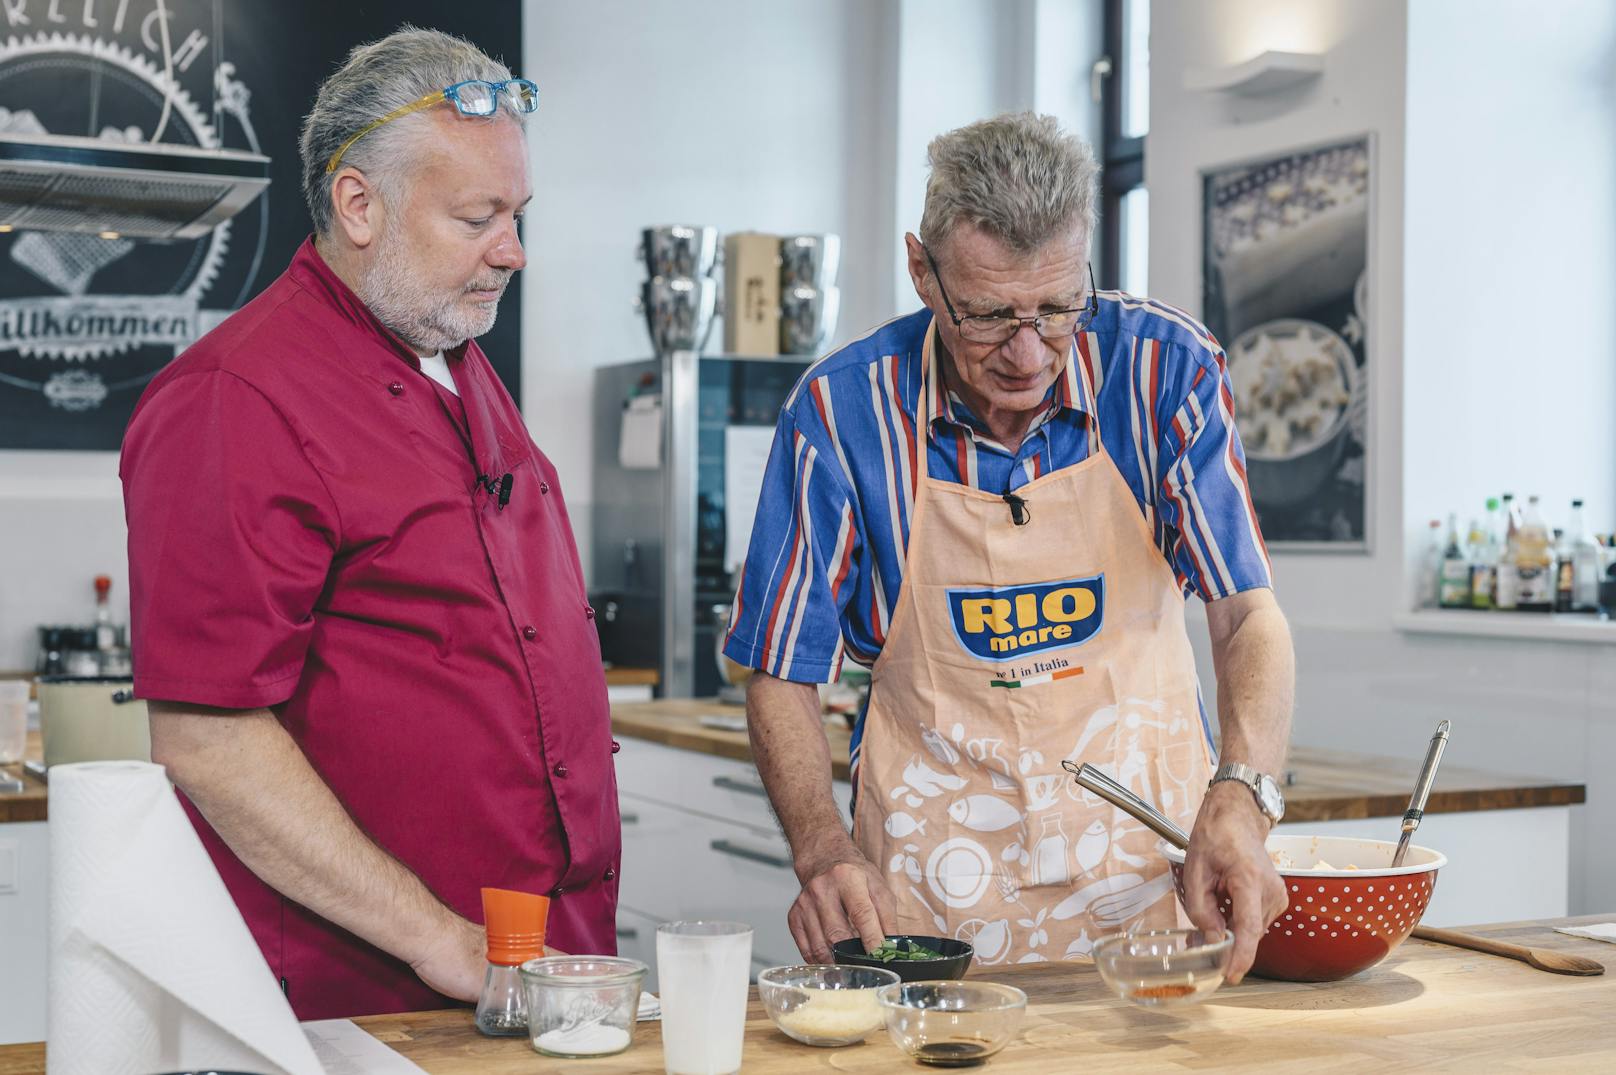 Kochstunde mit Rio Mare: Gewinner Walter bereitet "Fusilli mit Thunfisch-Tomaten-Oberssauce" zu.